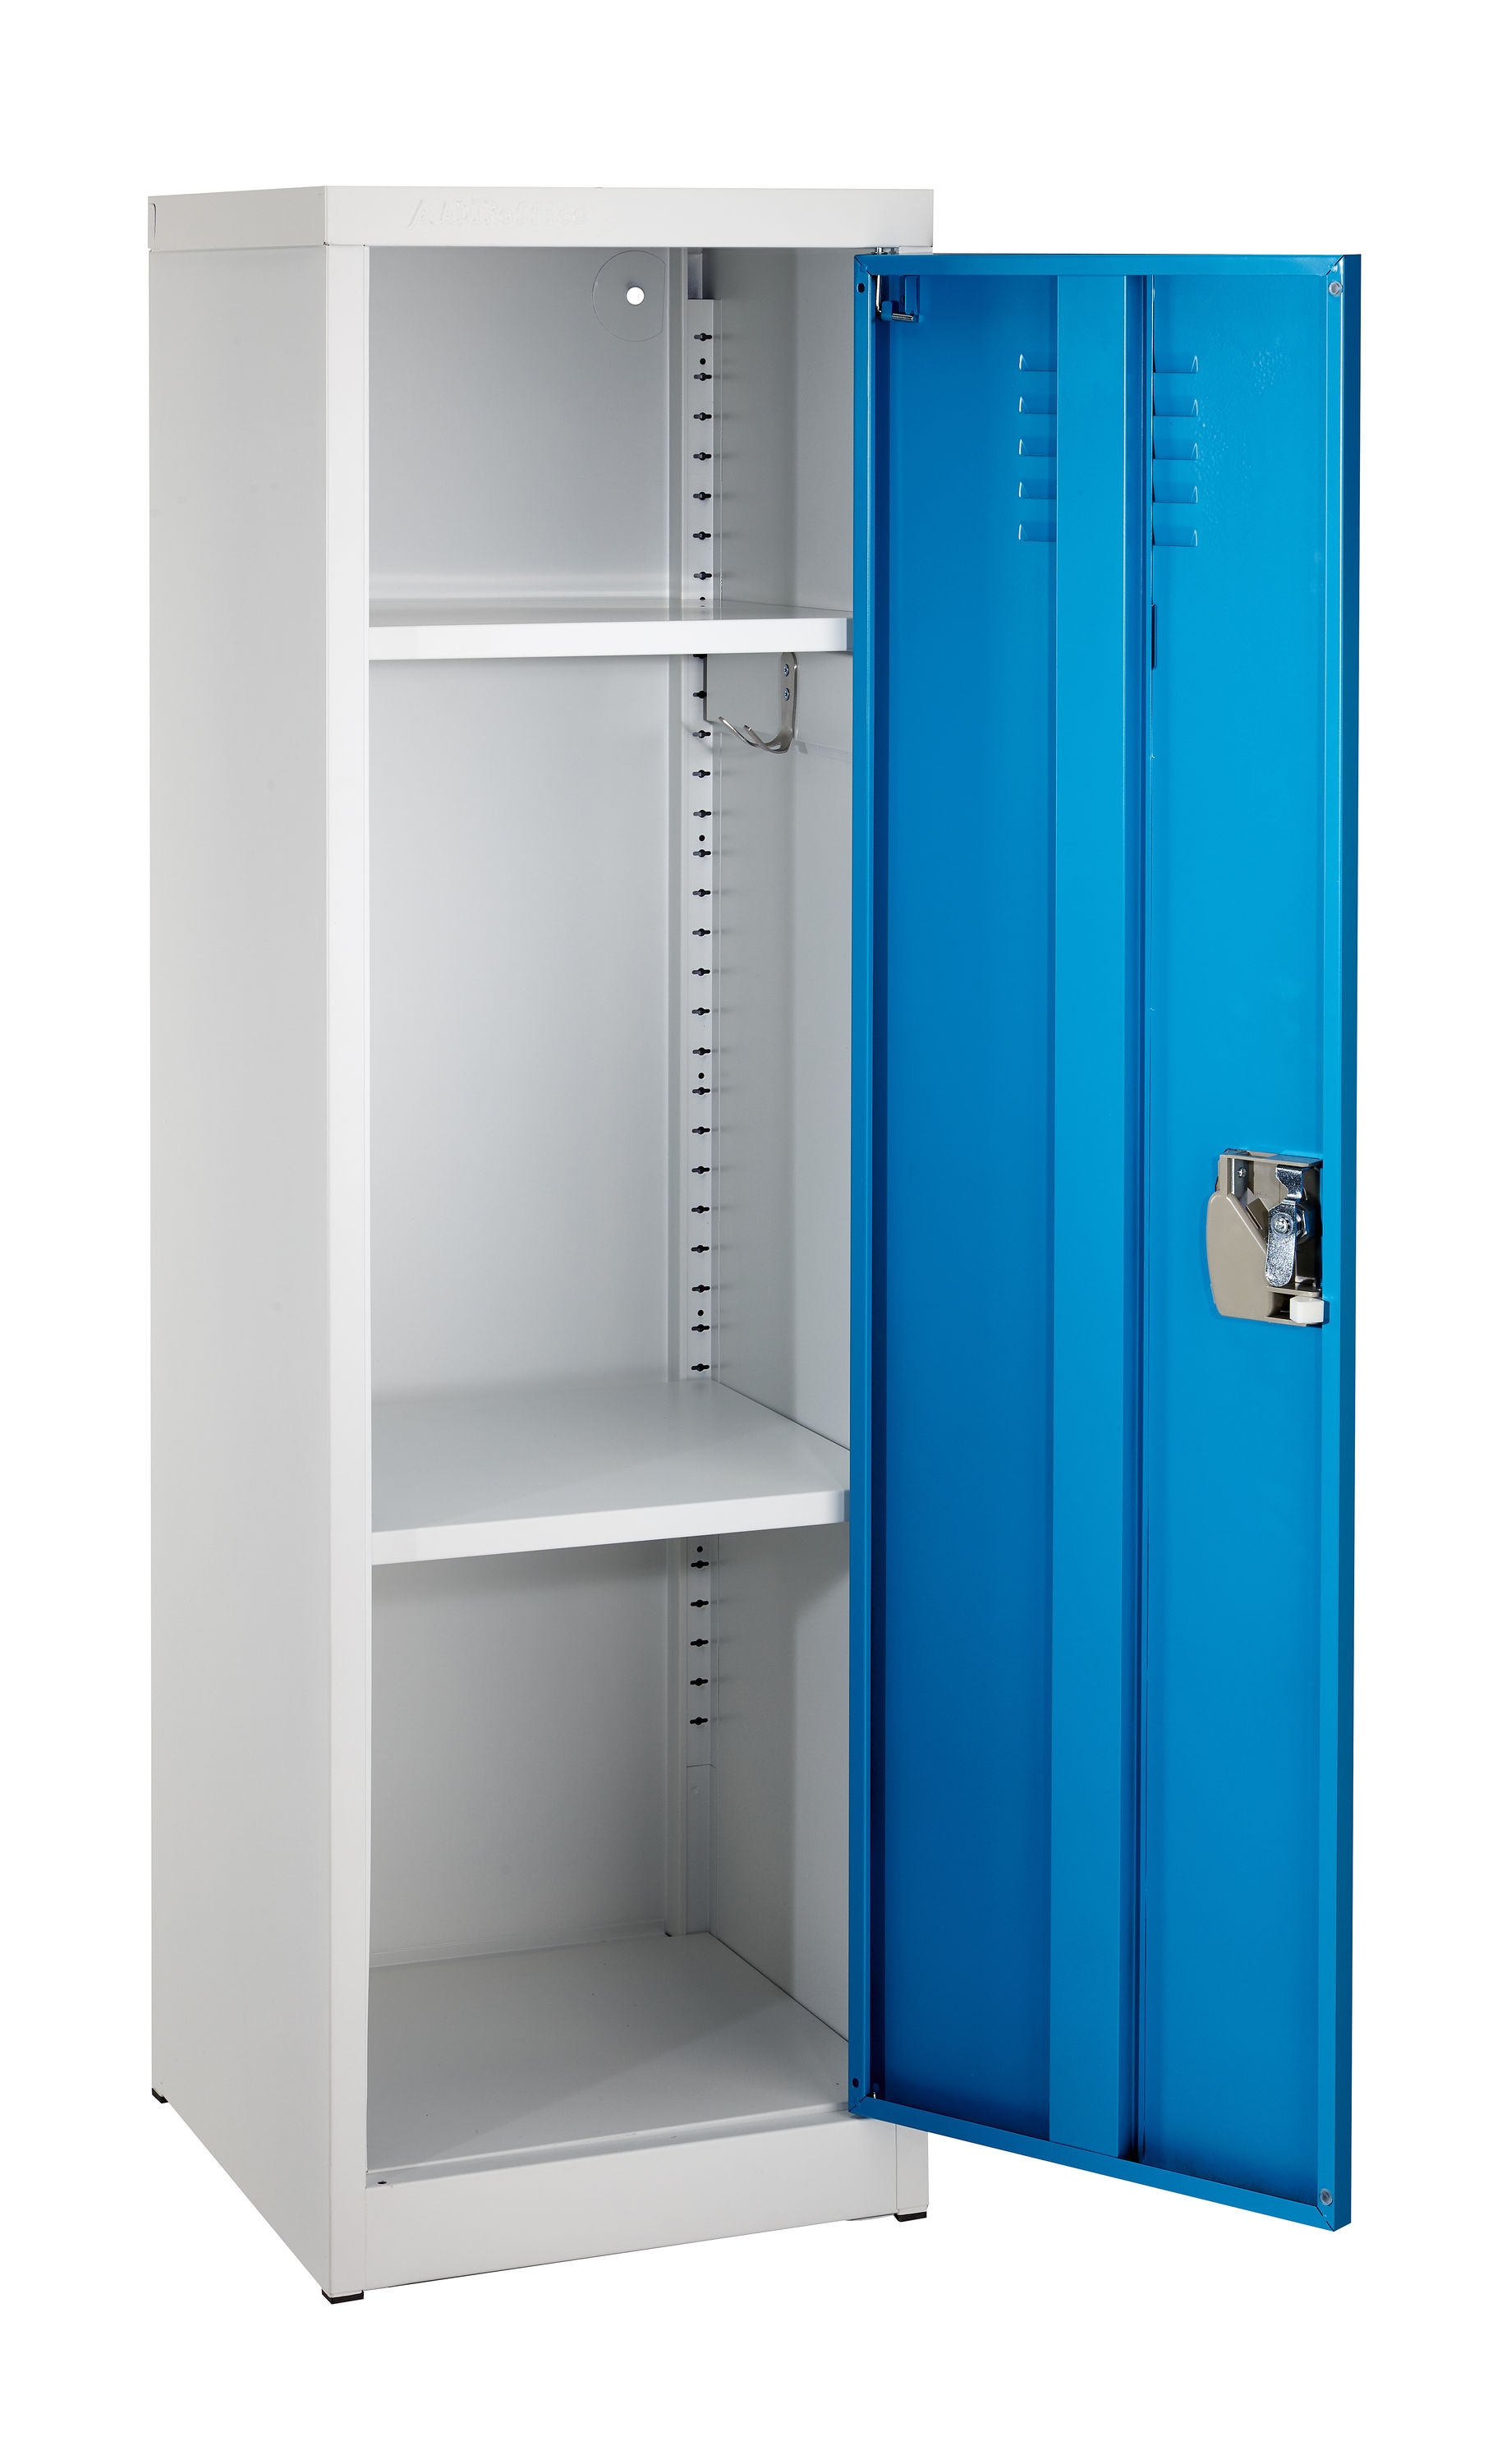 AdirOffice 48-in H x 15-in W Steel Single Tier Locker in Blue 12-in W x  48-in H x 12-in D Steel Full Storage Lockers at